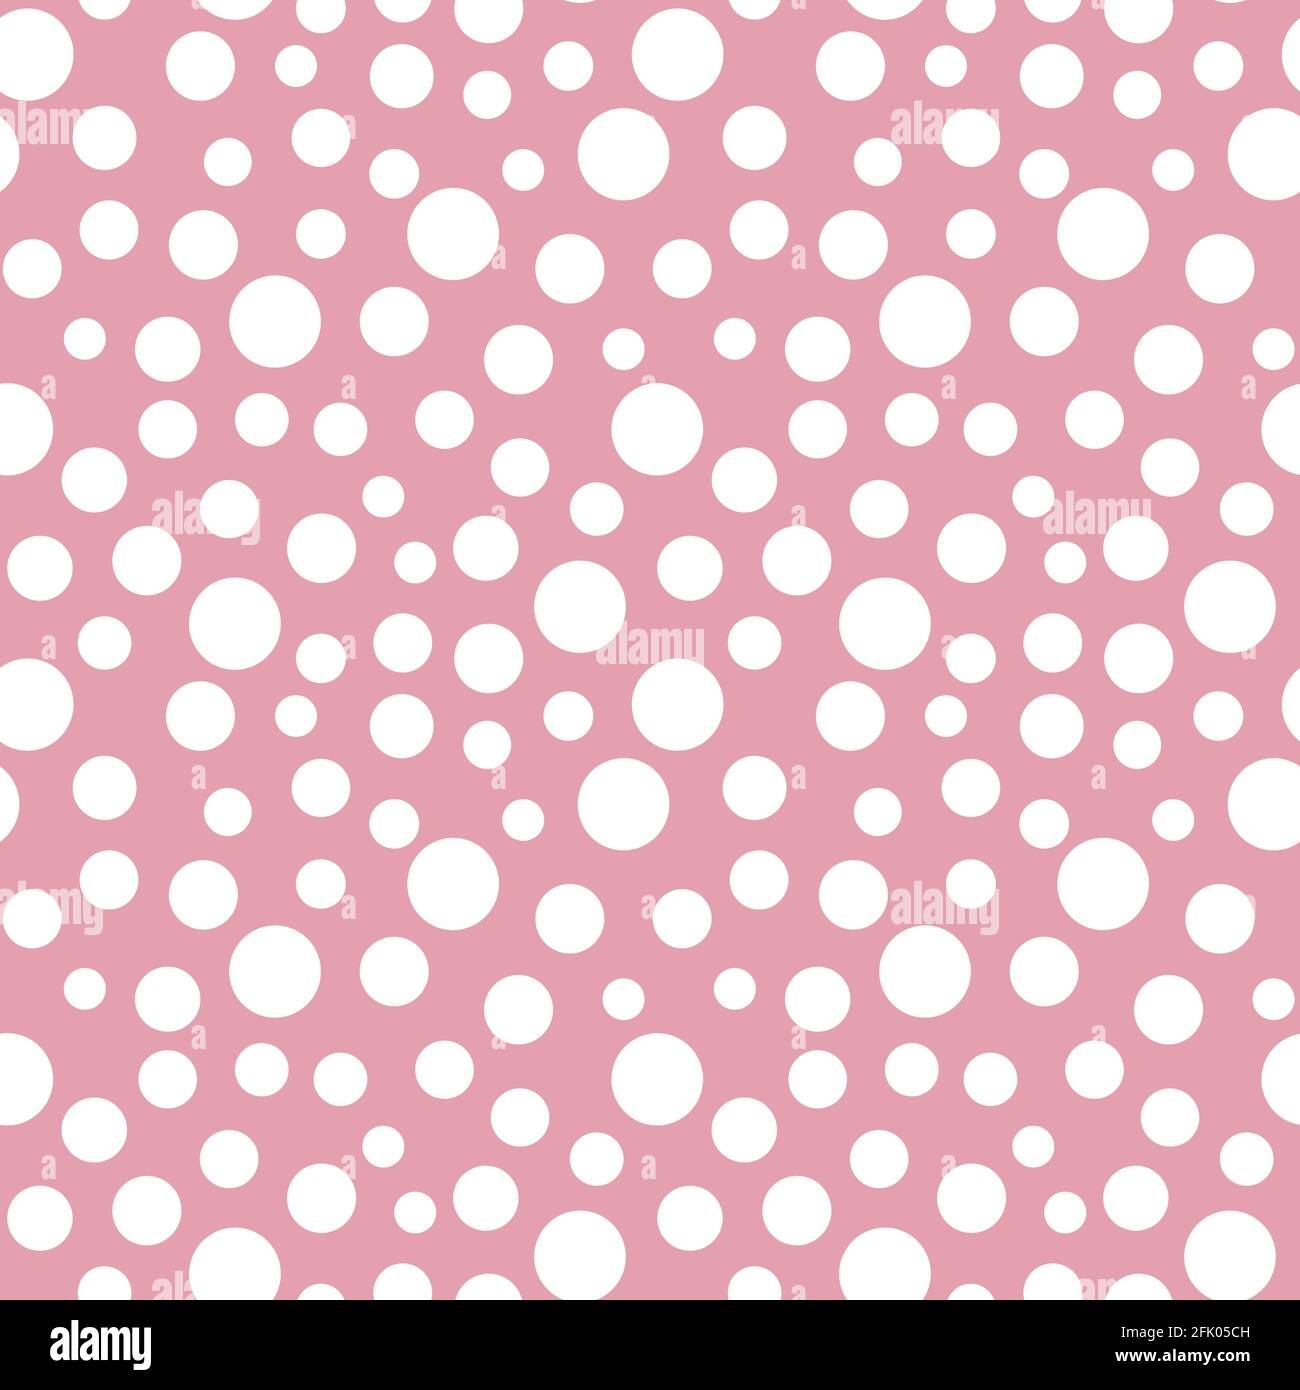 Abstrakt handgezeichneter Polka-Punkt Nahtloses Muster retro weiß Punkt Tracery auf rosa Hintergrund unregelmäßigen Rhythmus und Größe Vektor Illustration Stock Vektor